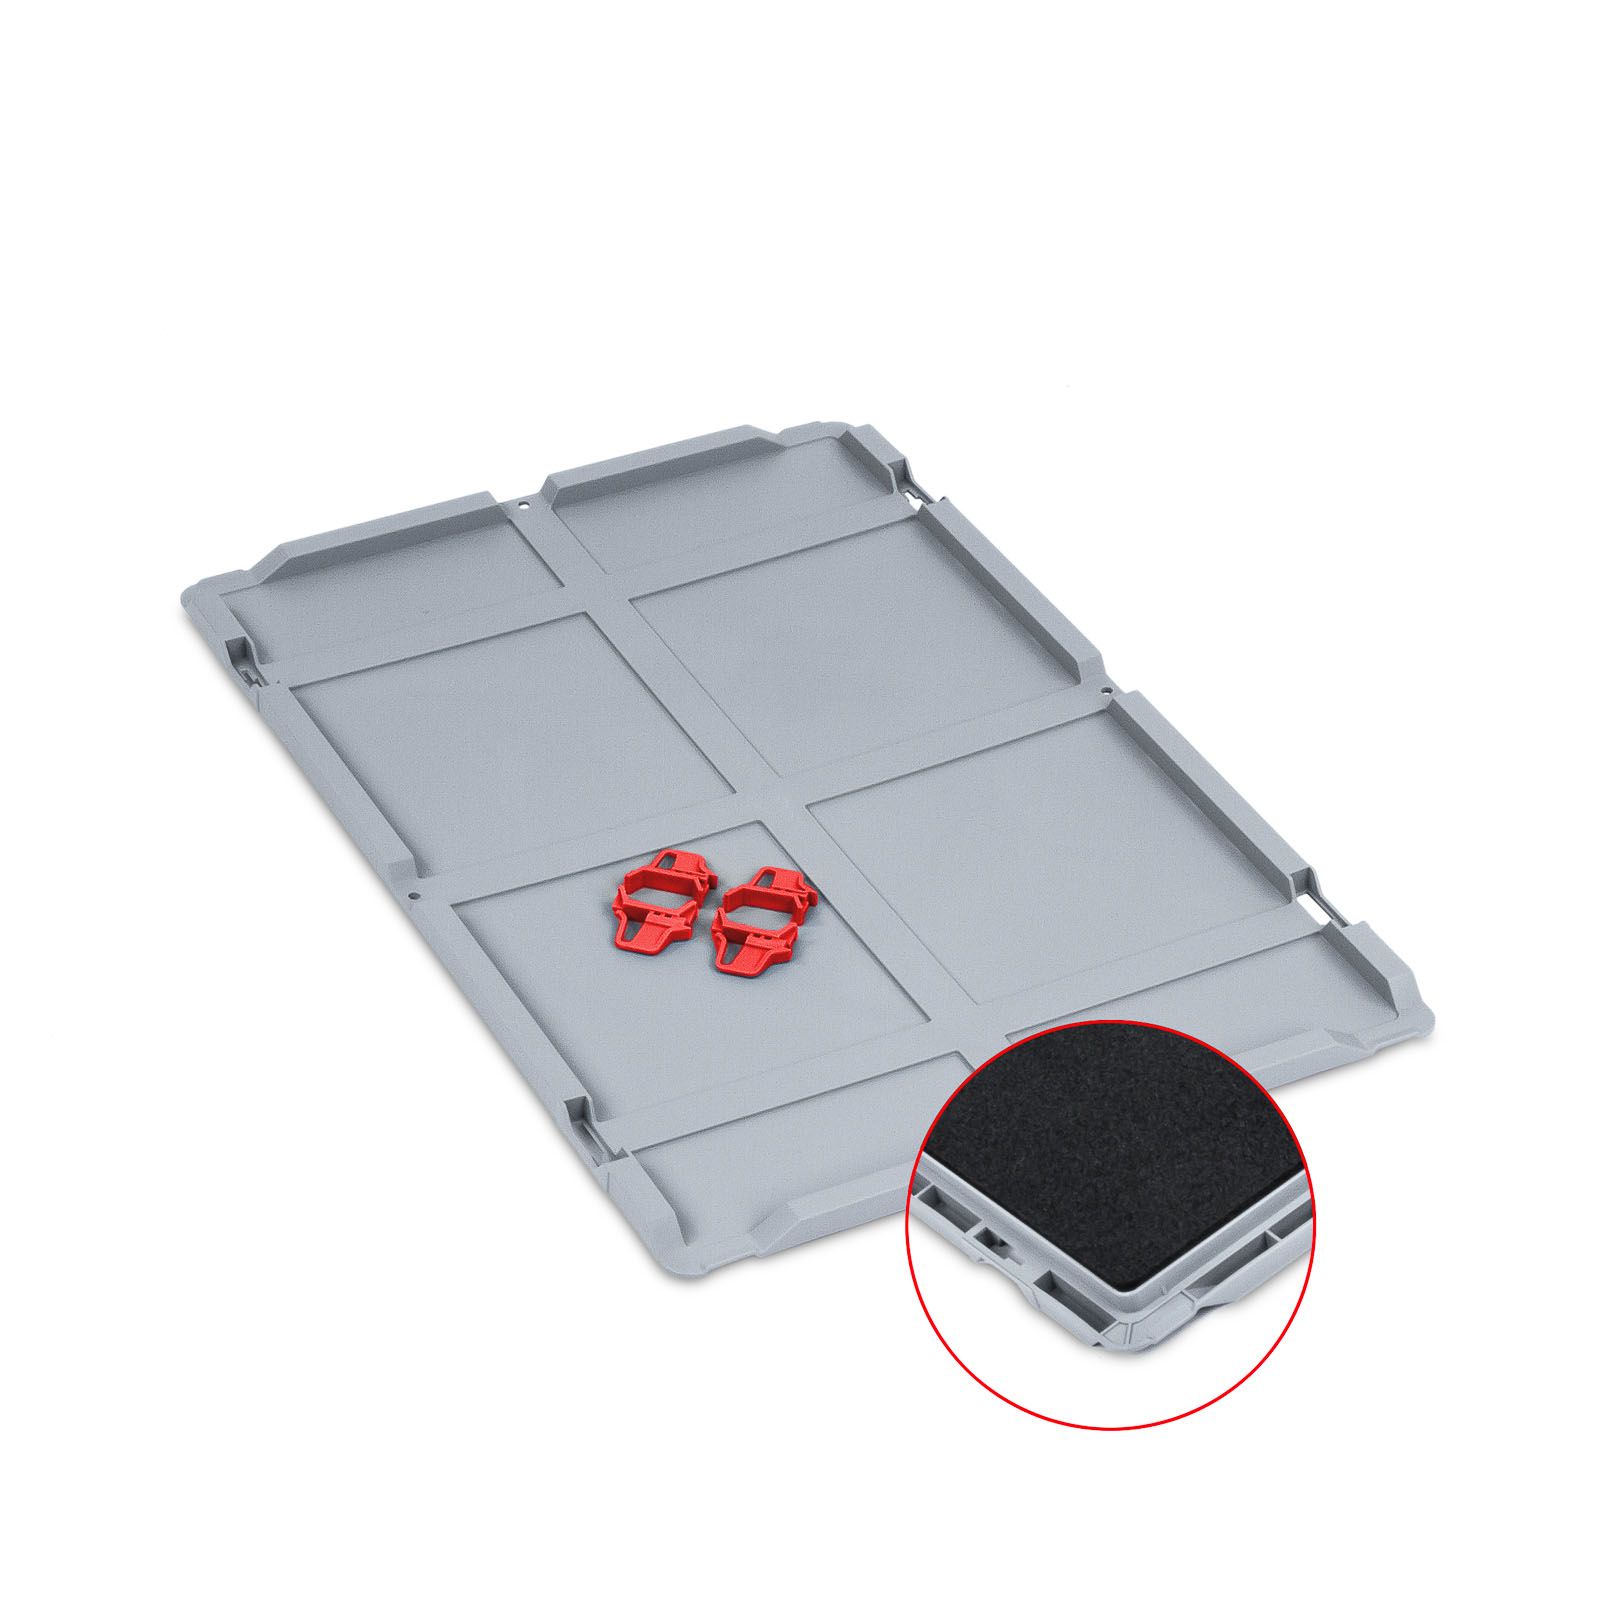 Auflagedeckel Set Eurobox NextGen mit Schaumstoff und 4 rote Schiebeschnappverschlüsse | BxT 40x60cm | Eurobehälter, Transportbox, Transportbehälter, Stapelbehälter